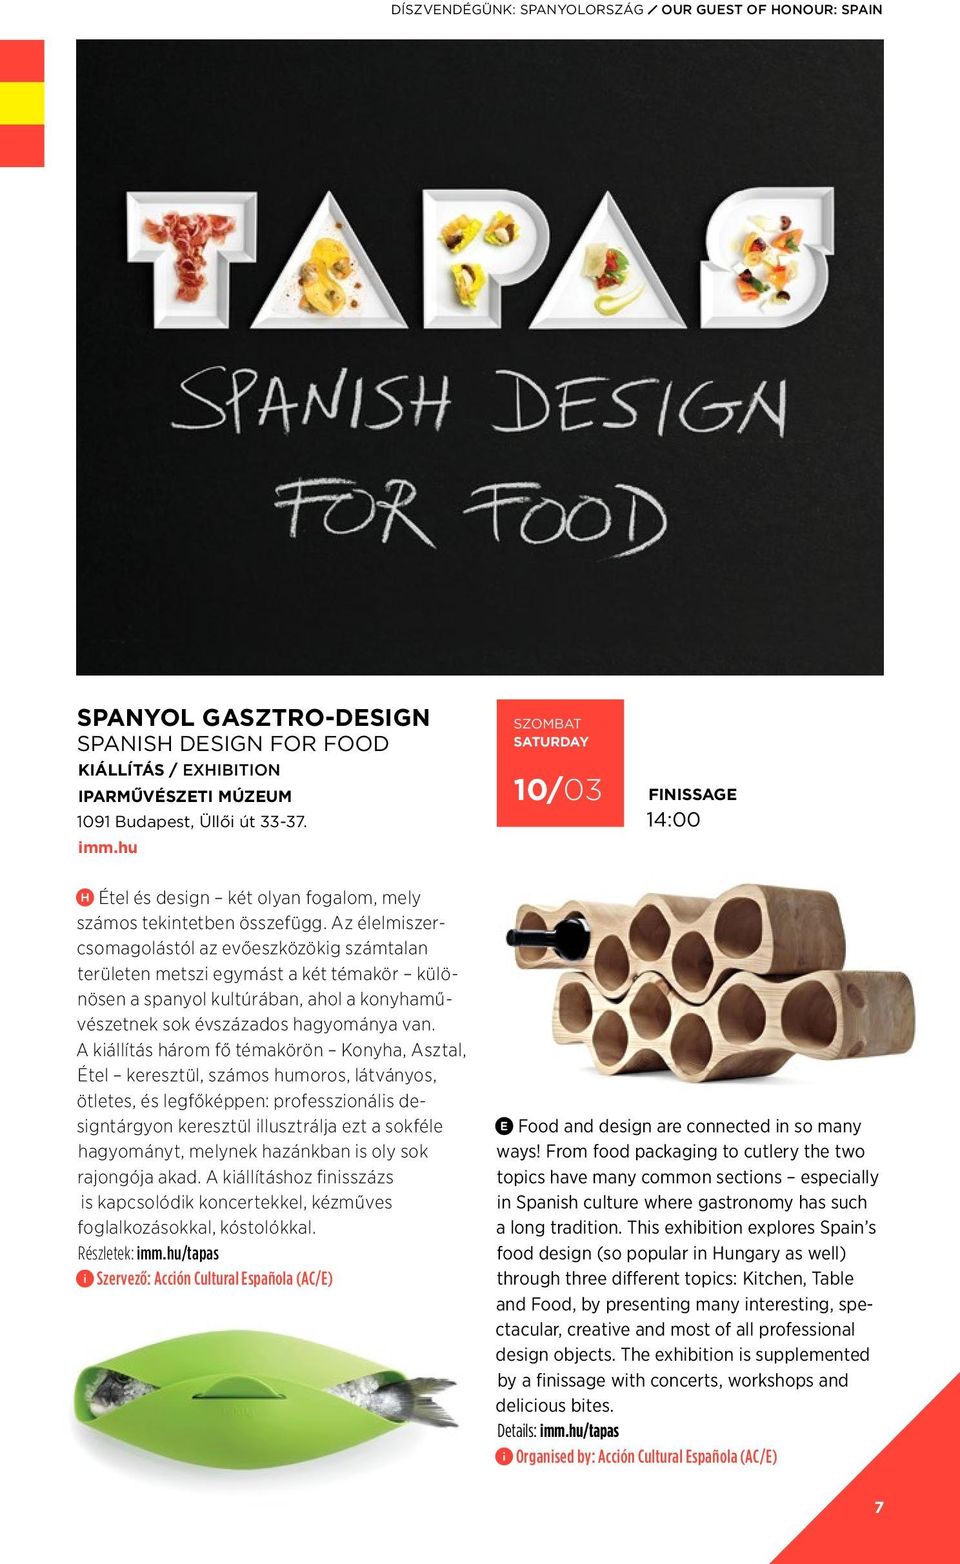 Az élelmiszercsomagolástól az evőeszközökig számtalan területen metszi egymást a két témakör különösen a spanyol kultúrában, ahol a konyhaművészetnek sok évszázados hagyománya van.